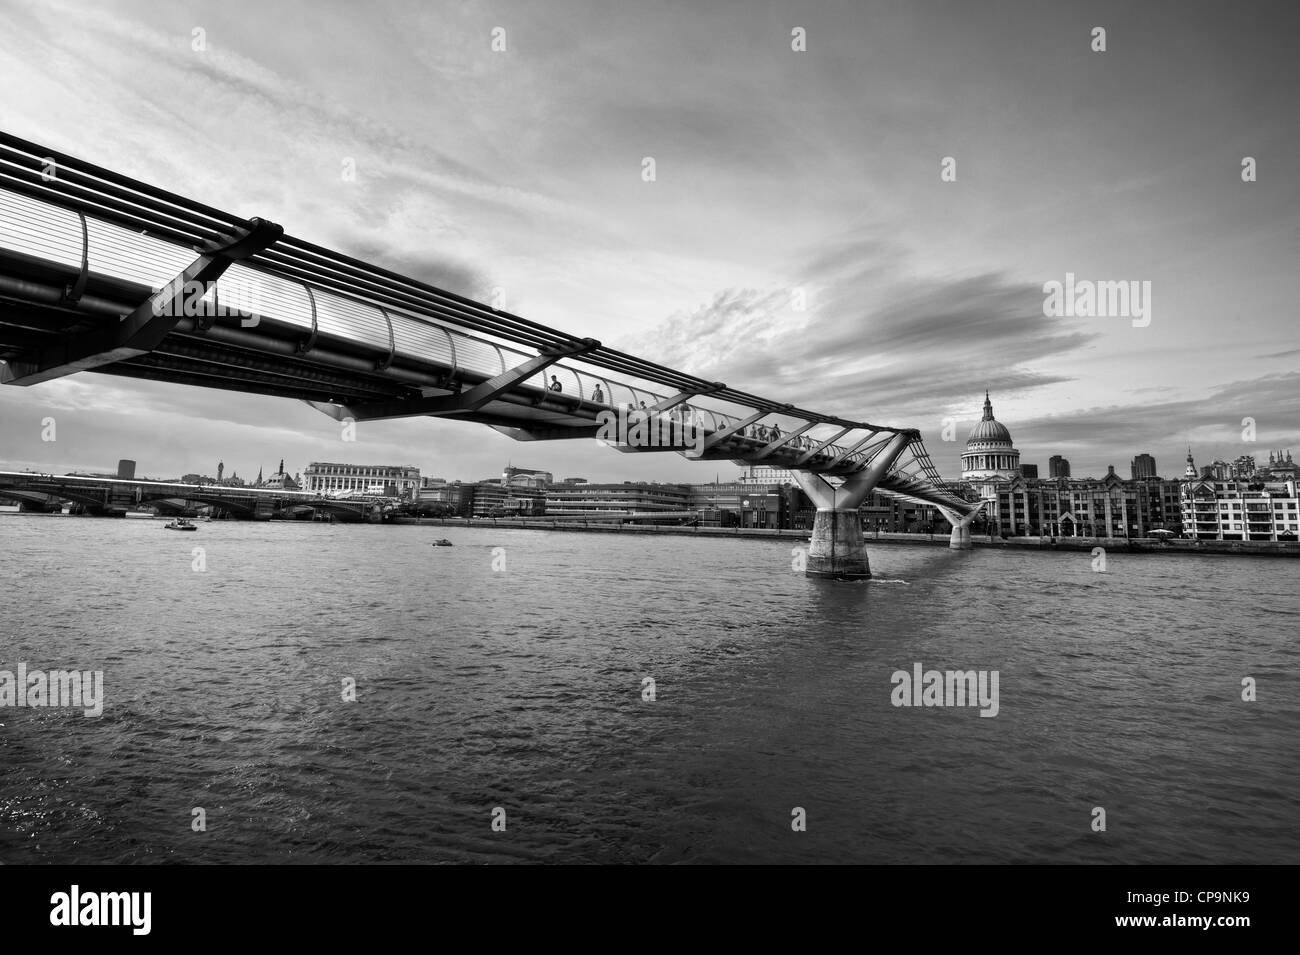 Millennium bridge over River Thames, London, England Banque D'Images